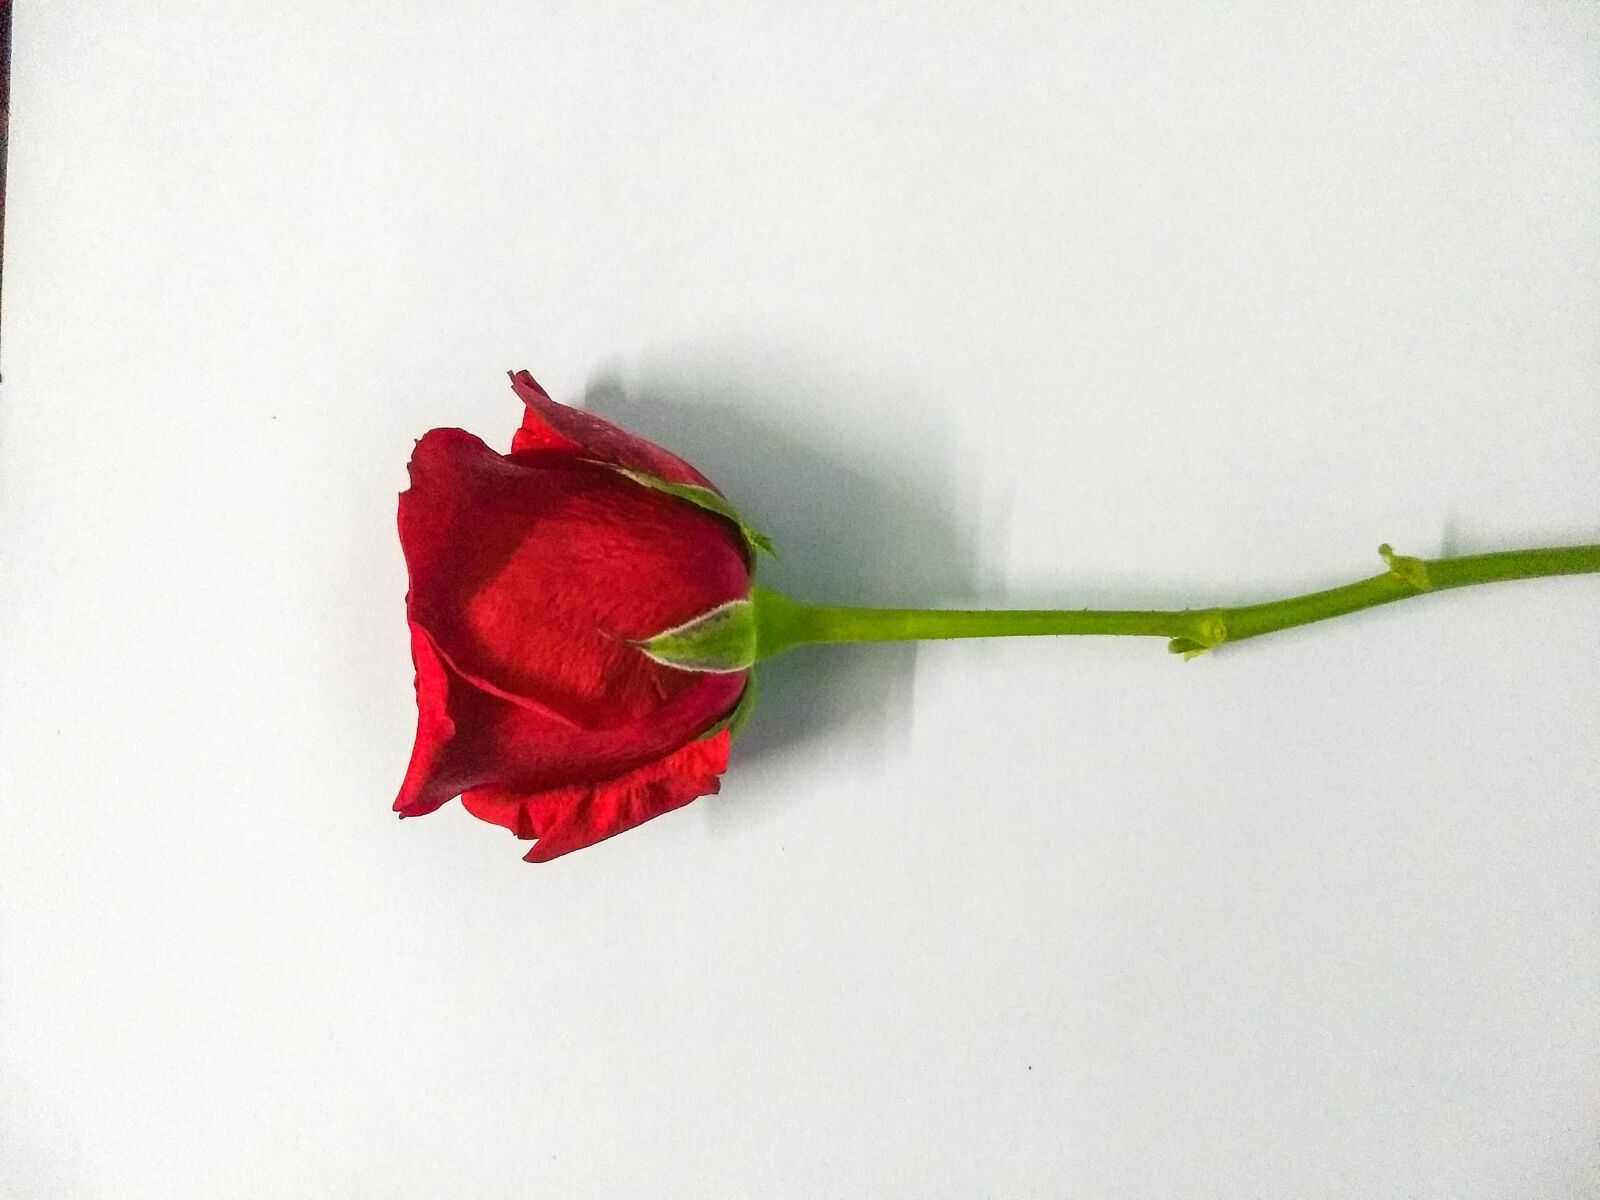 Motorola Moto G (5) Plus sample photo. Red rose, rose, red photography